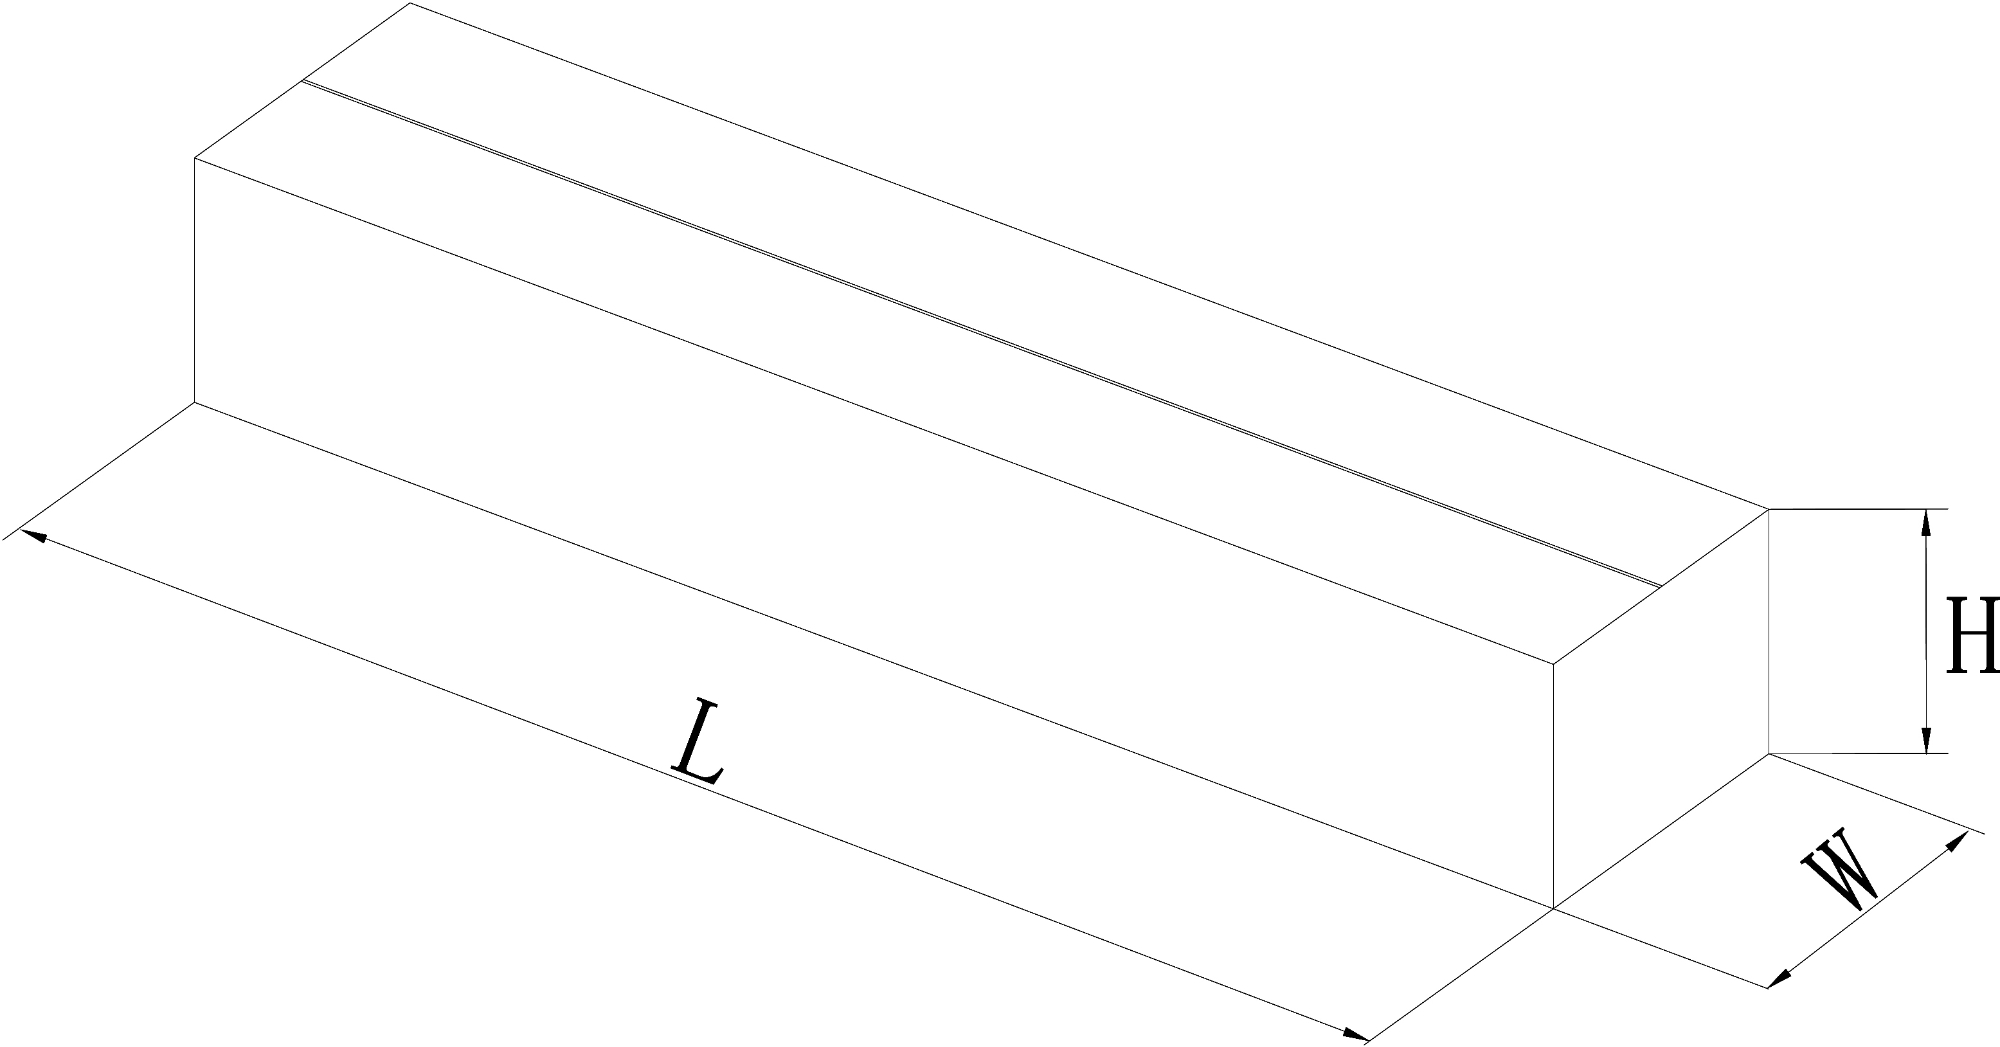 标准纸箱标注示意图 Model (1)